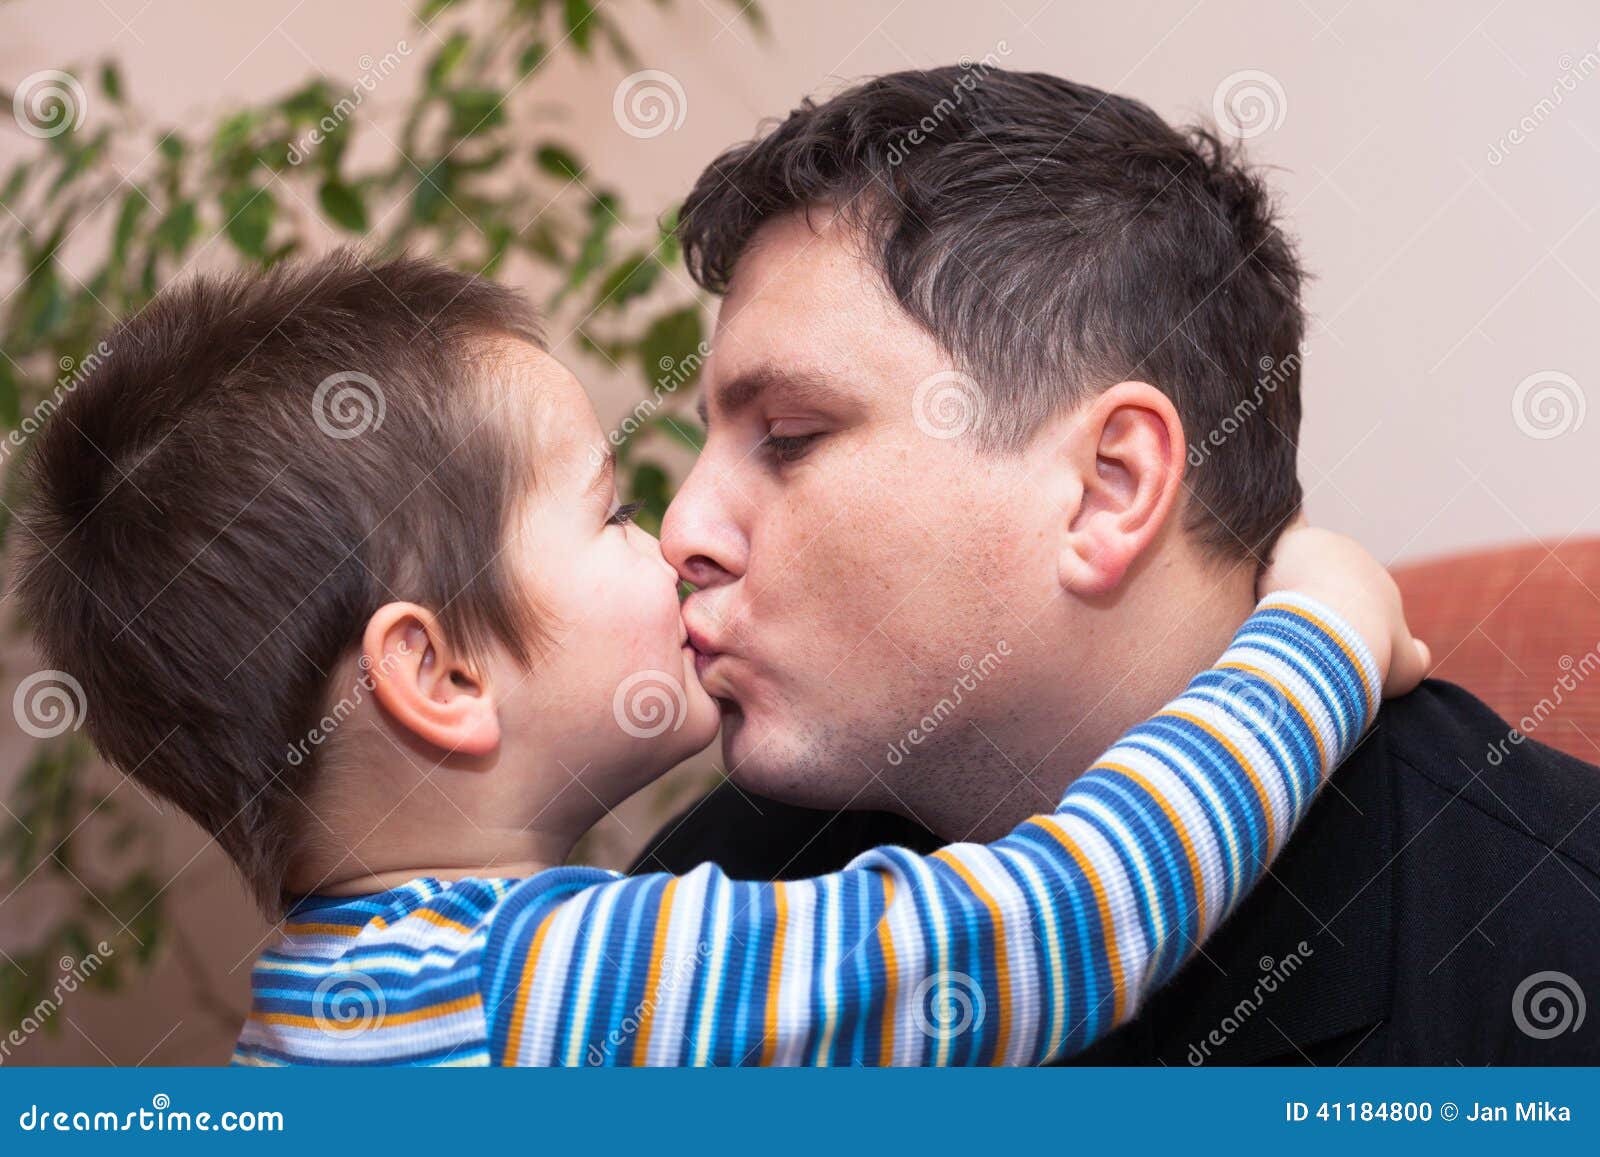 Boy old man. Мужчина целует ребенка. Поцелуй папу. Папа целует сына. Мальчик целует отца.